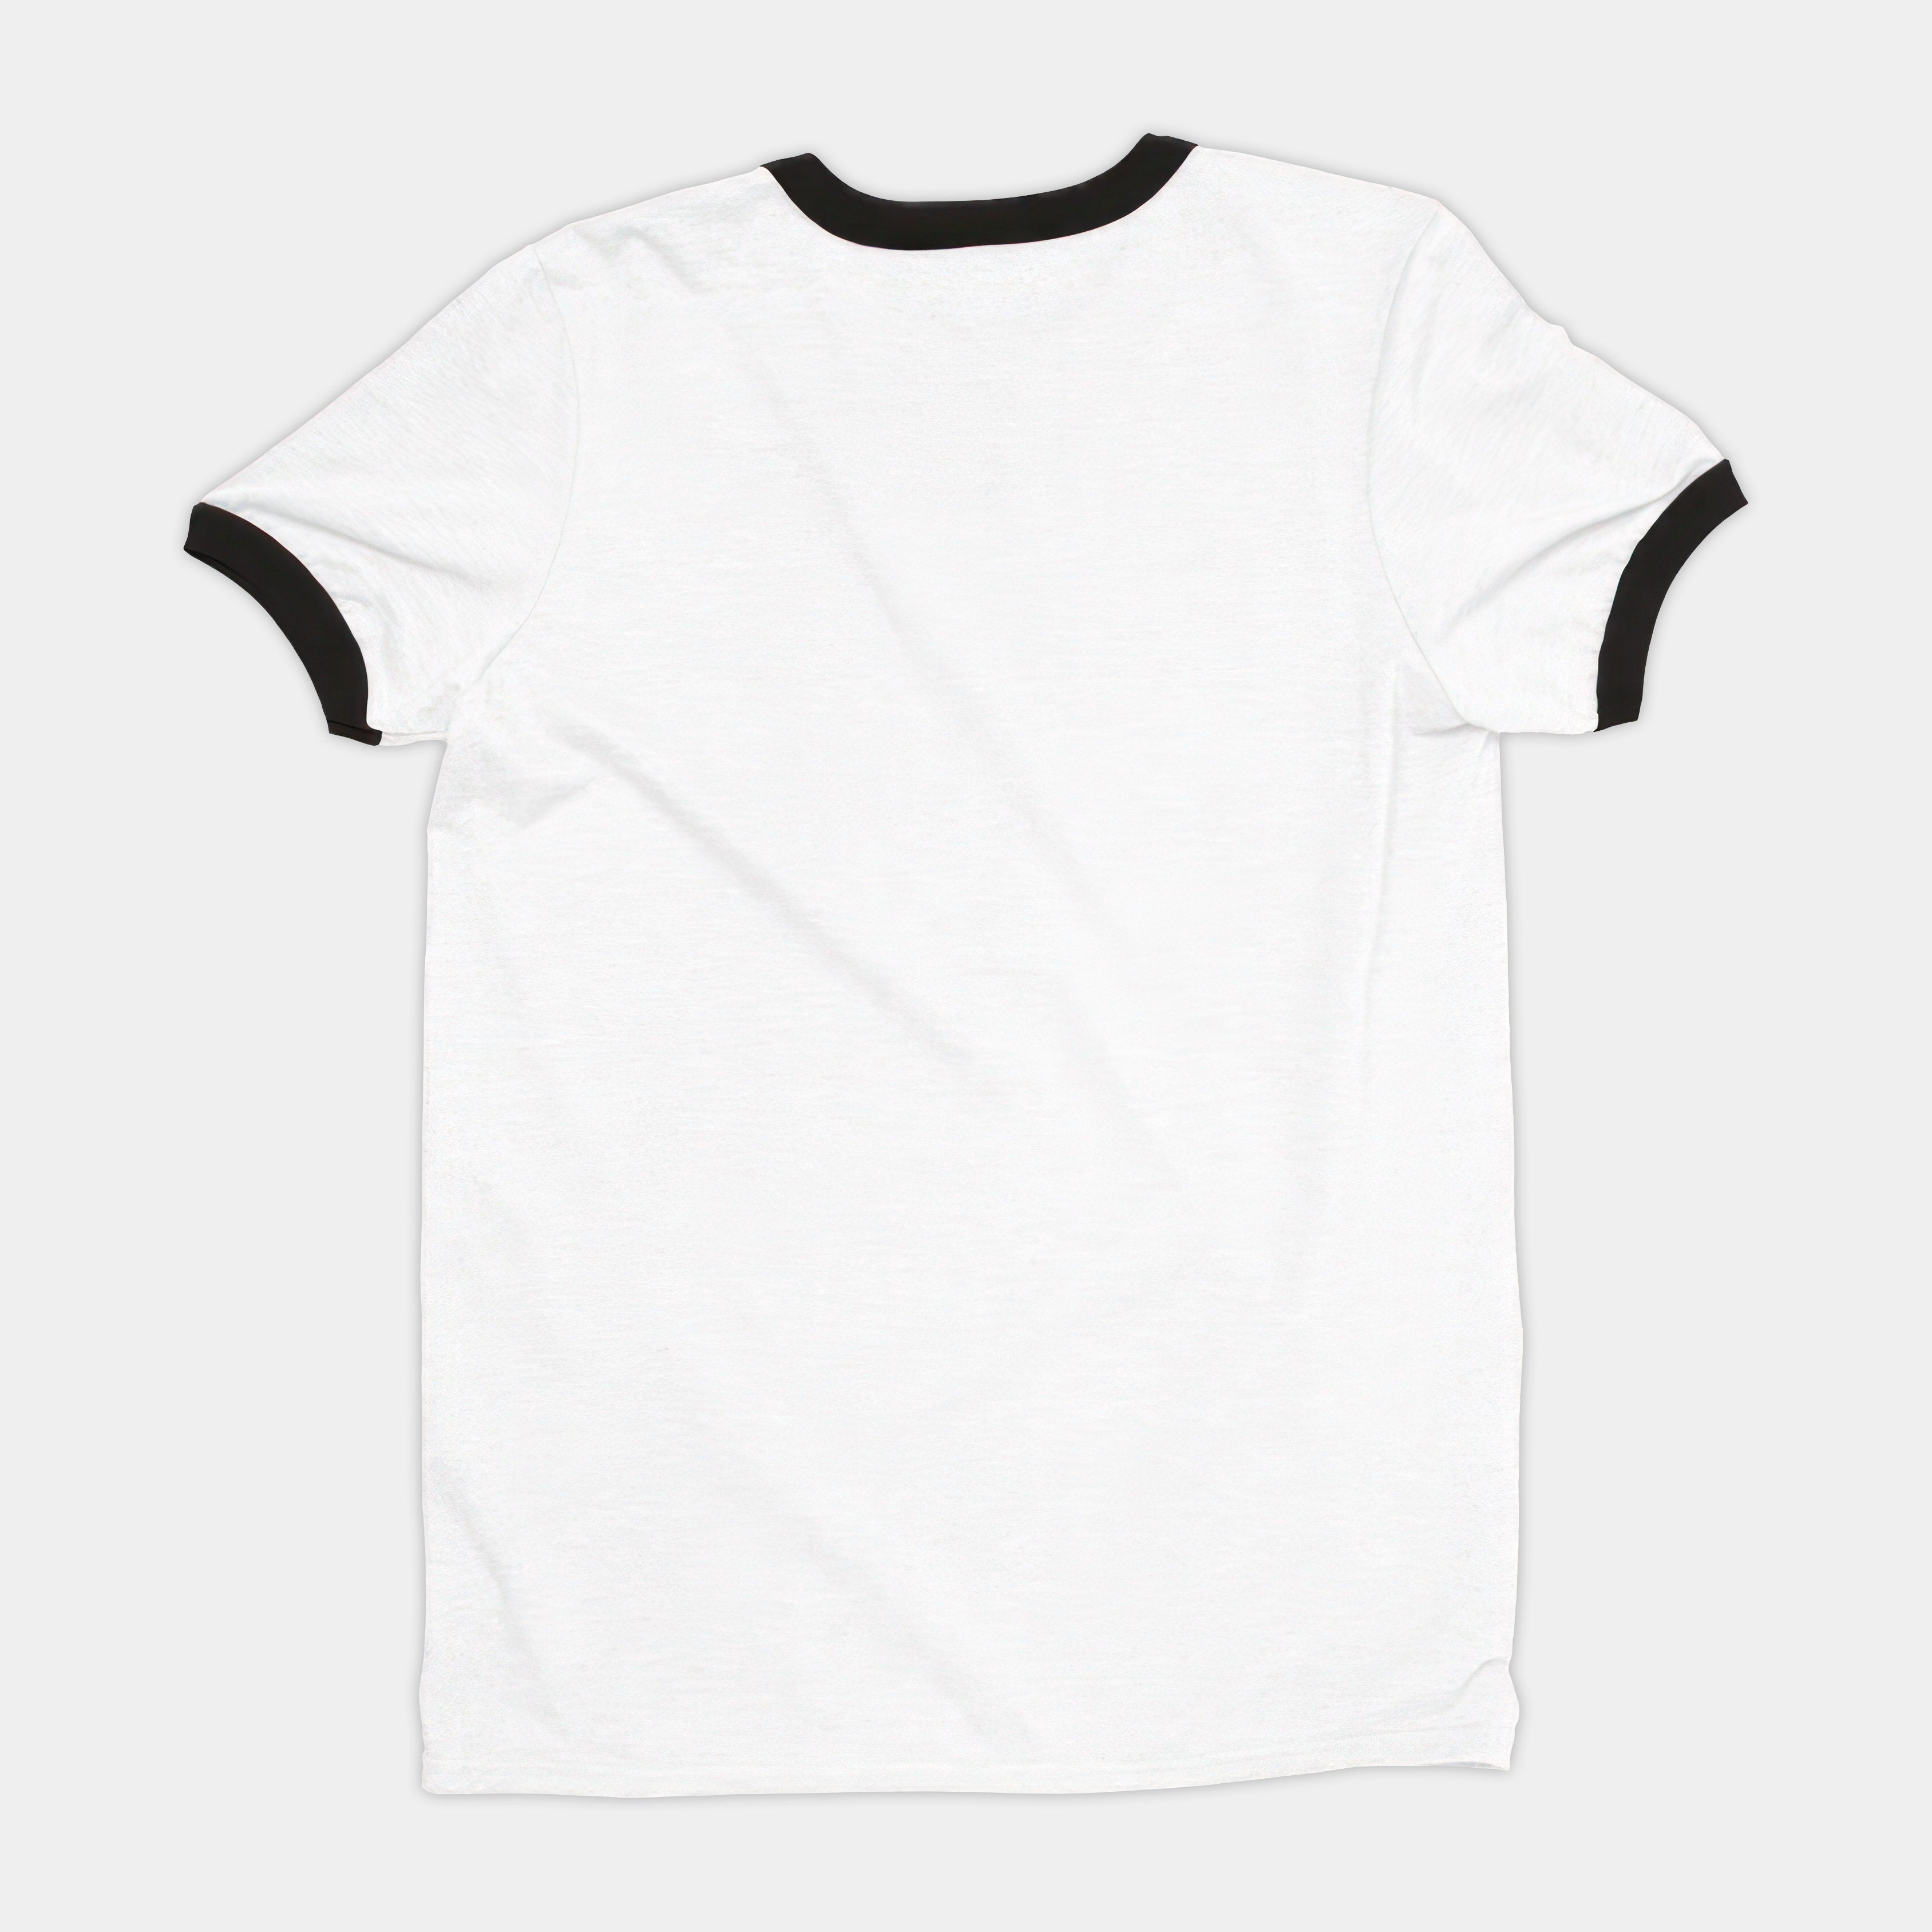 Imagine (Angel City) Ringer T-shirt